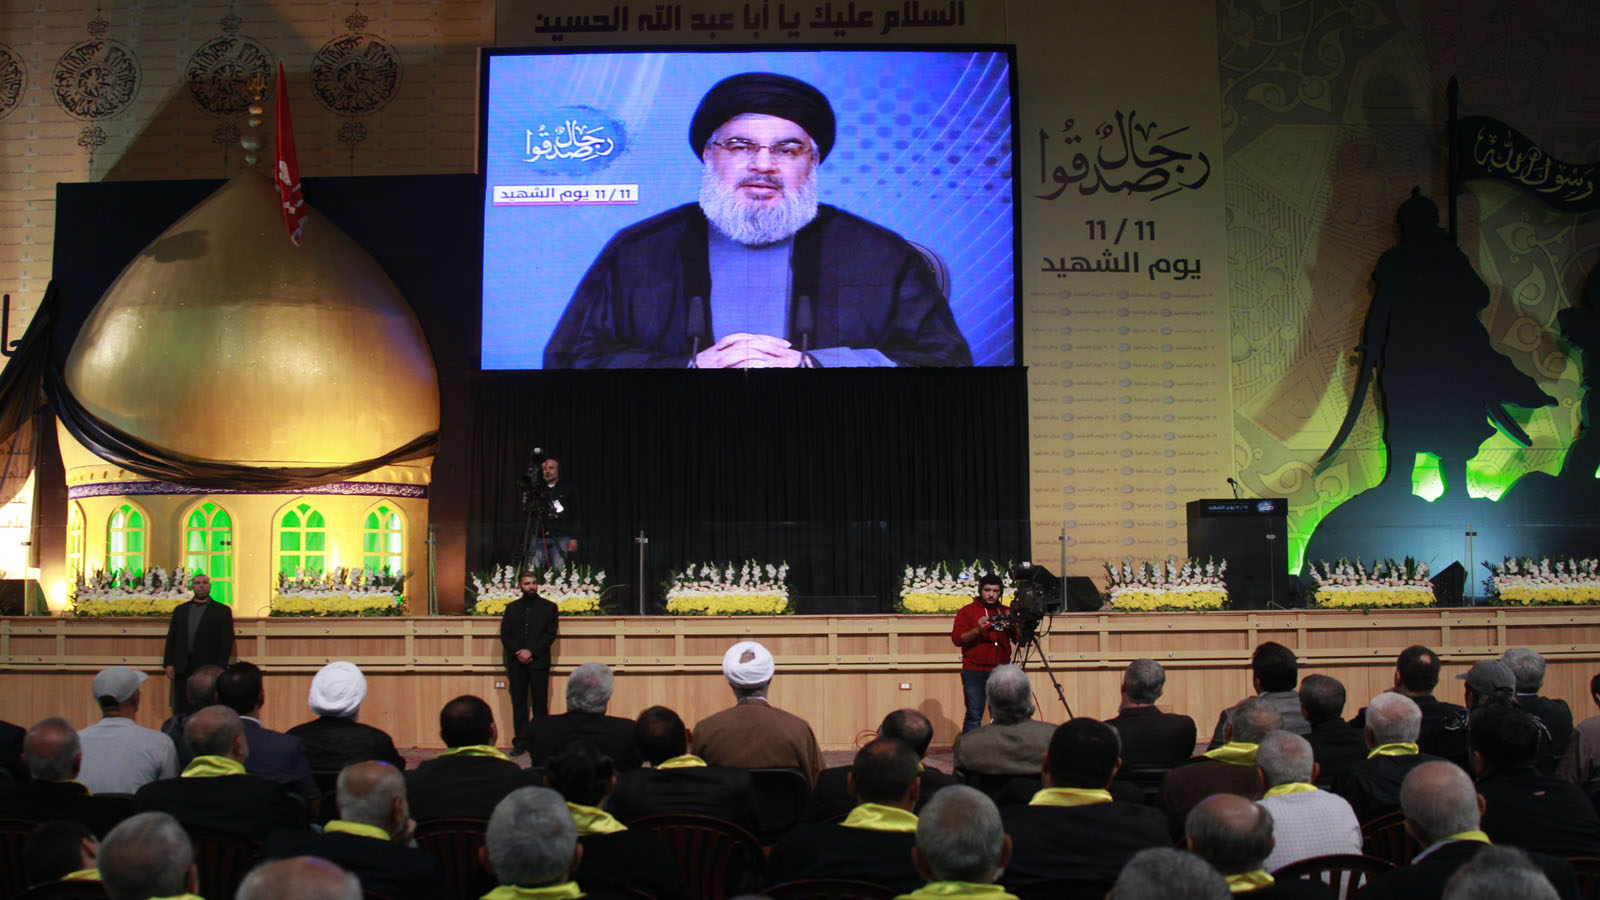 التهريج اللبناني عن"حزب الله"